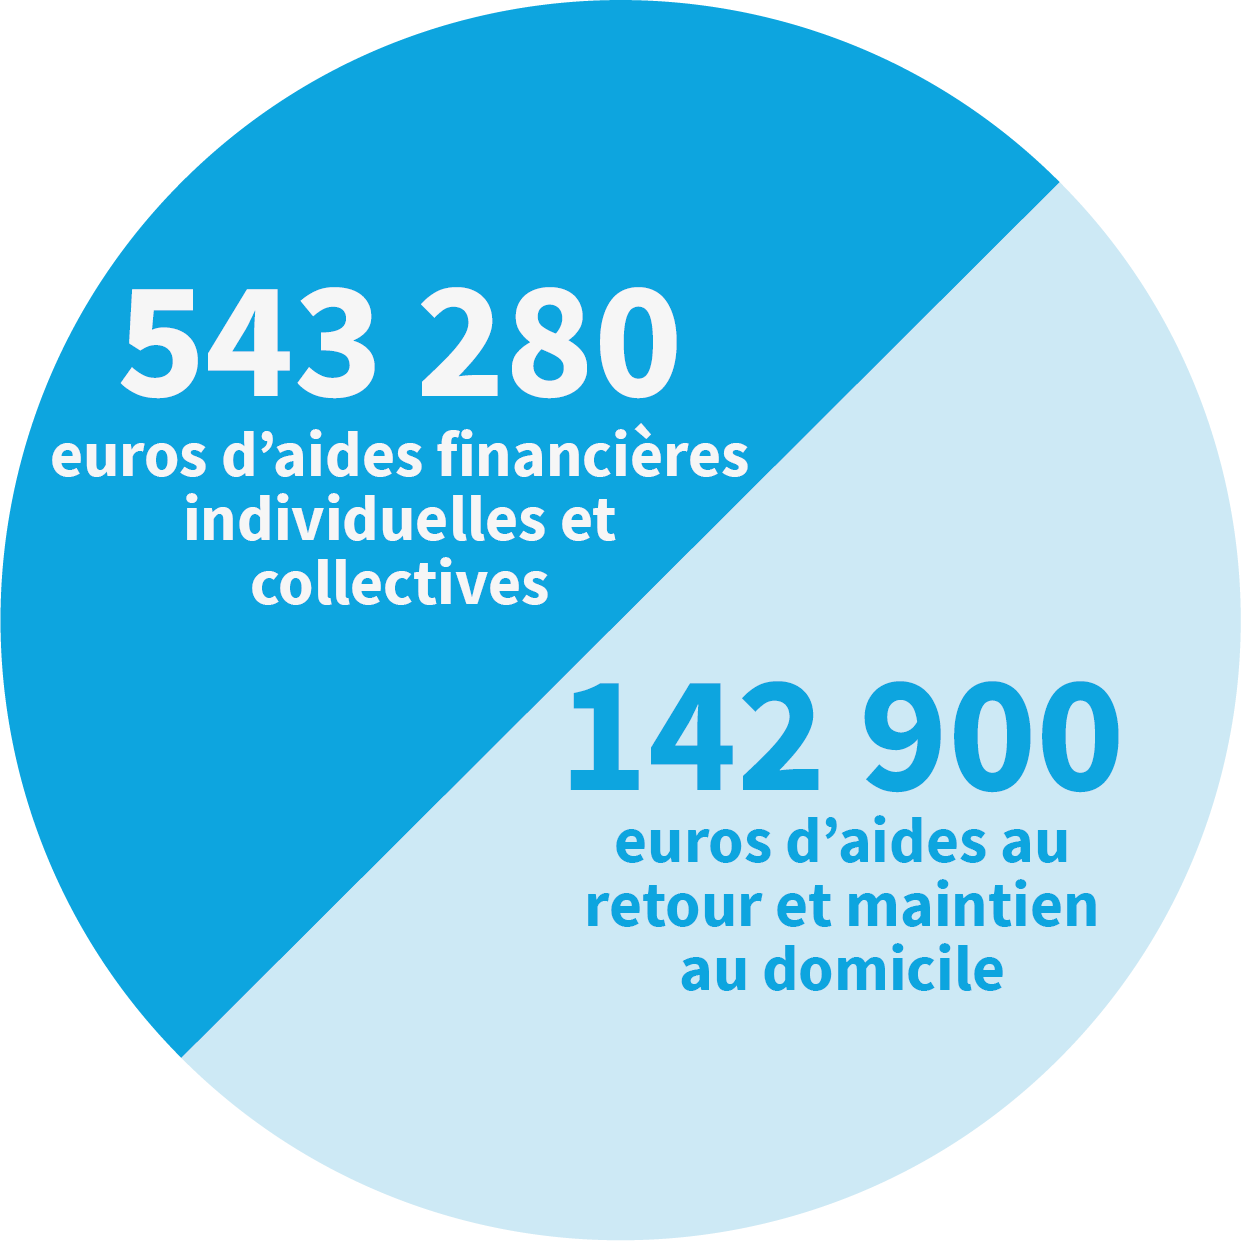 543 280 euros d'aides financières individuelles et collectives et 142 900 euros d'aides au retour et maintien au domicile